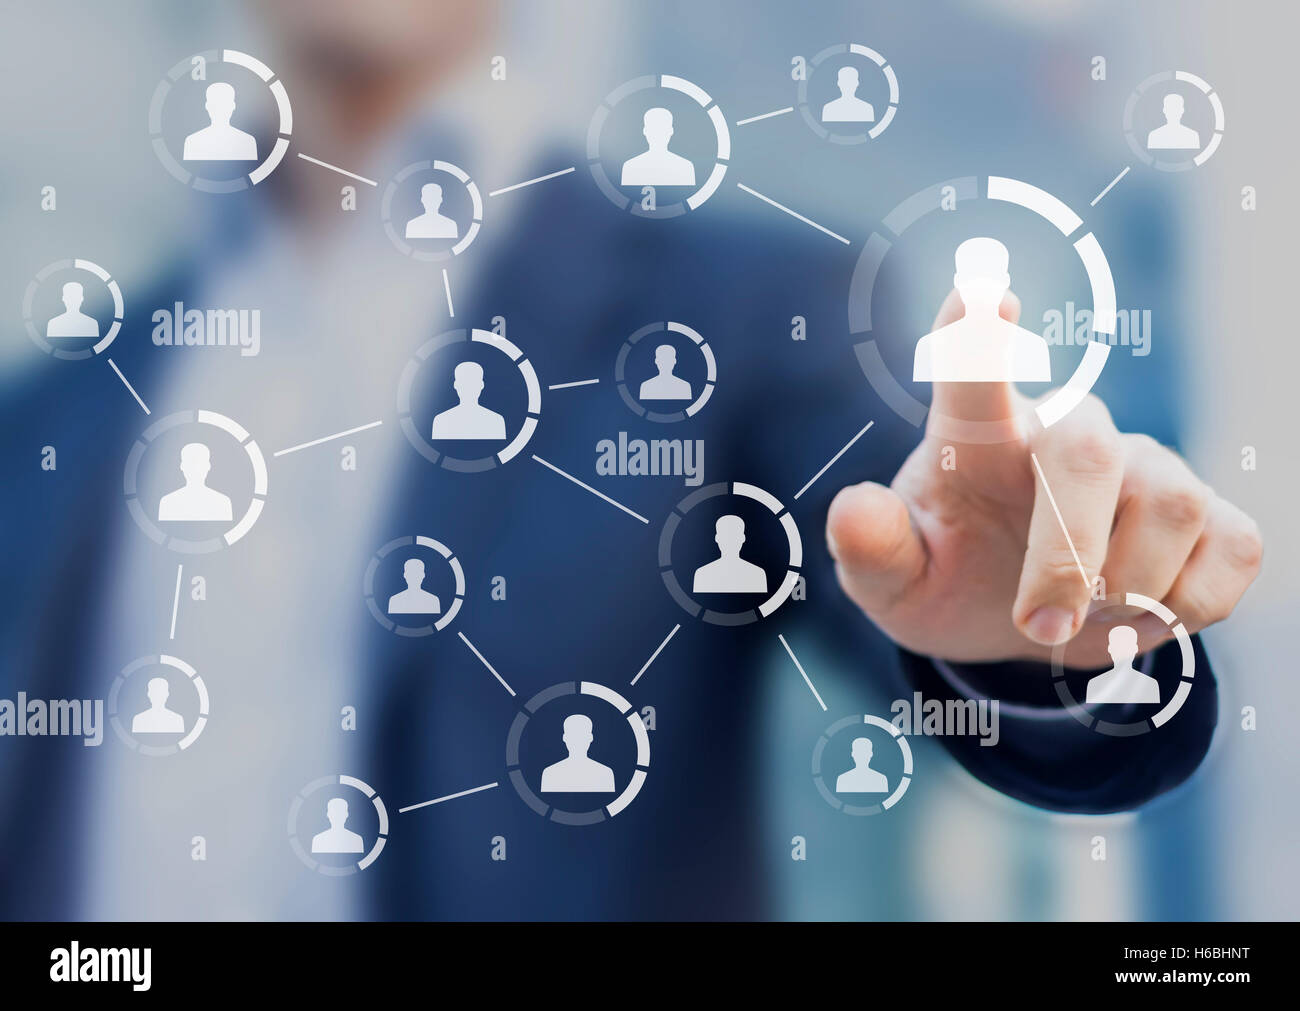 Structure du réseau social montrant les connexions entre les profils, l'interface virtuelle avec personne en arrière-plan Banque D'Images